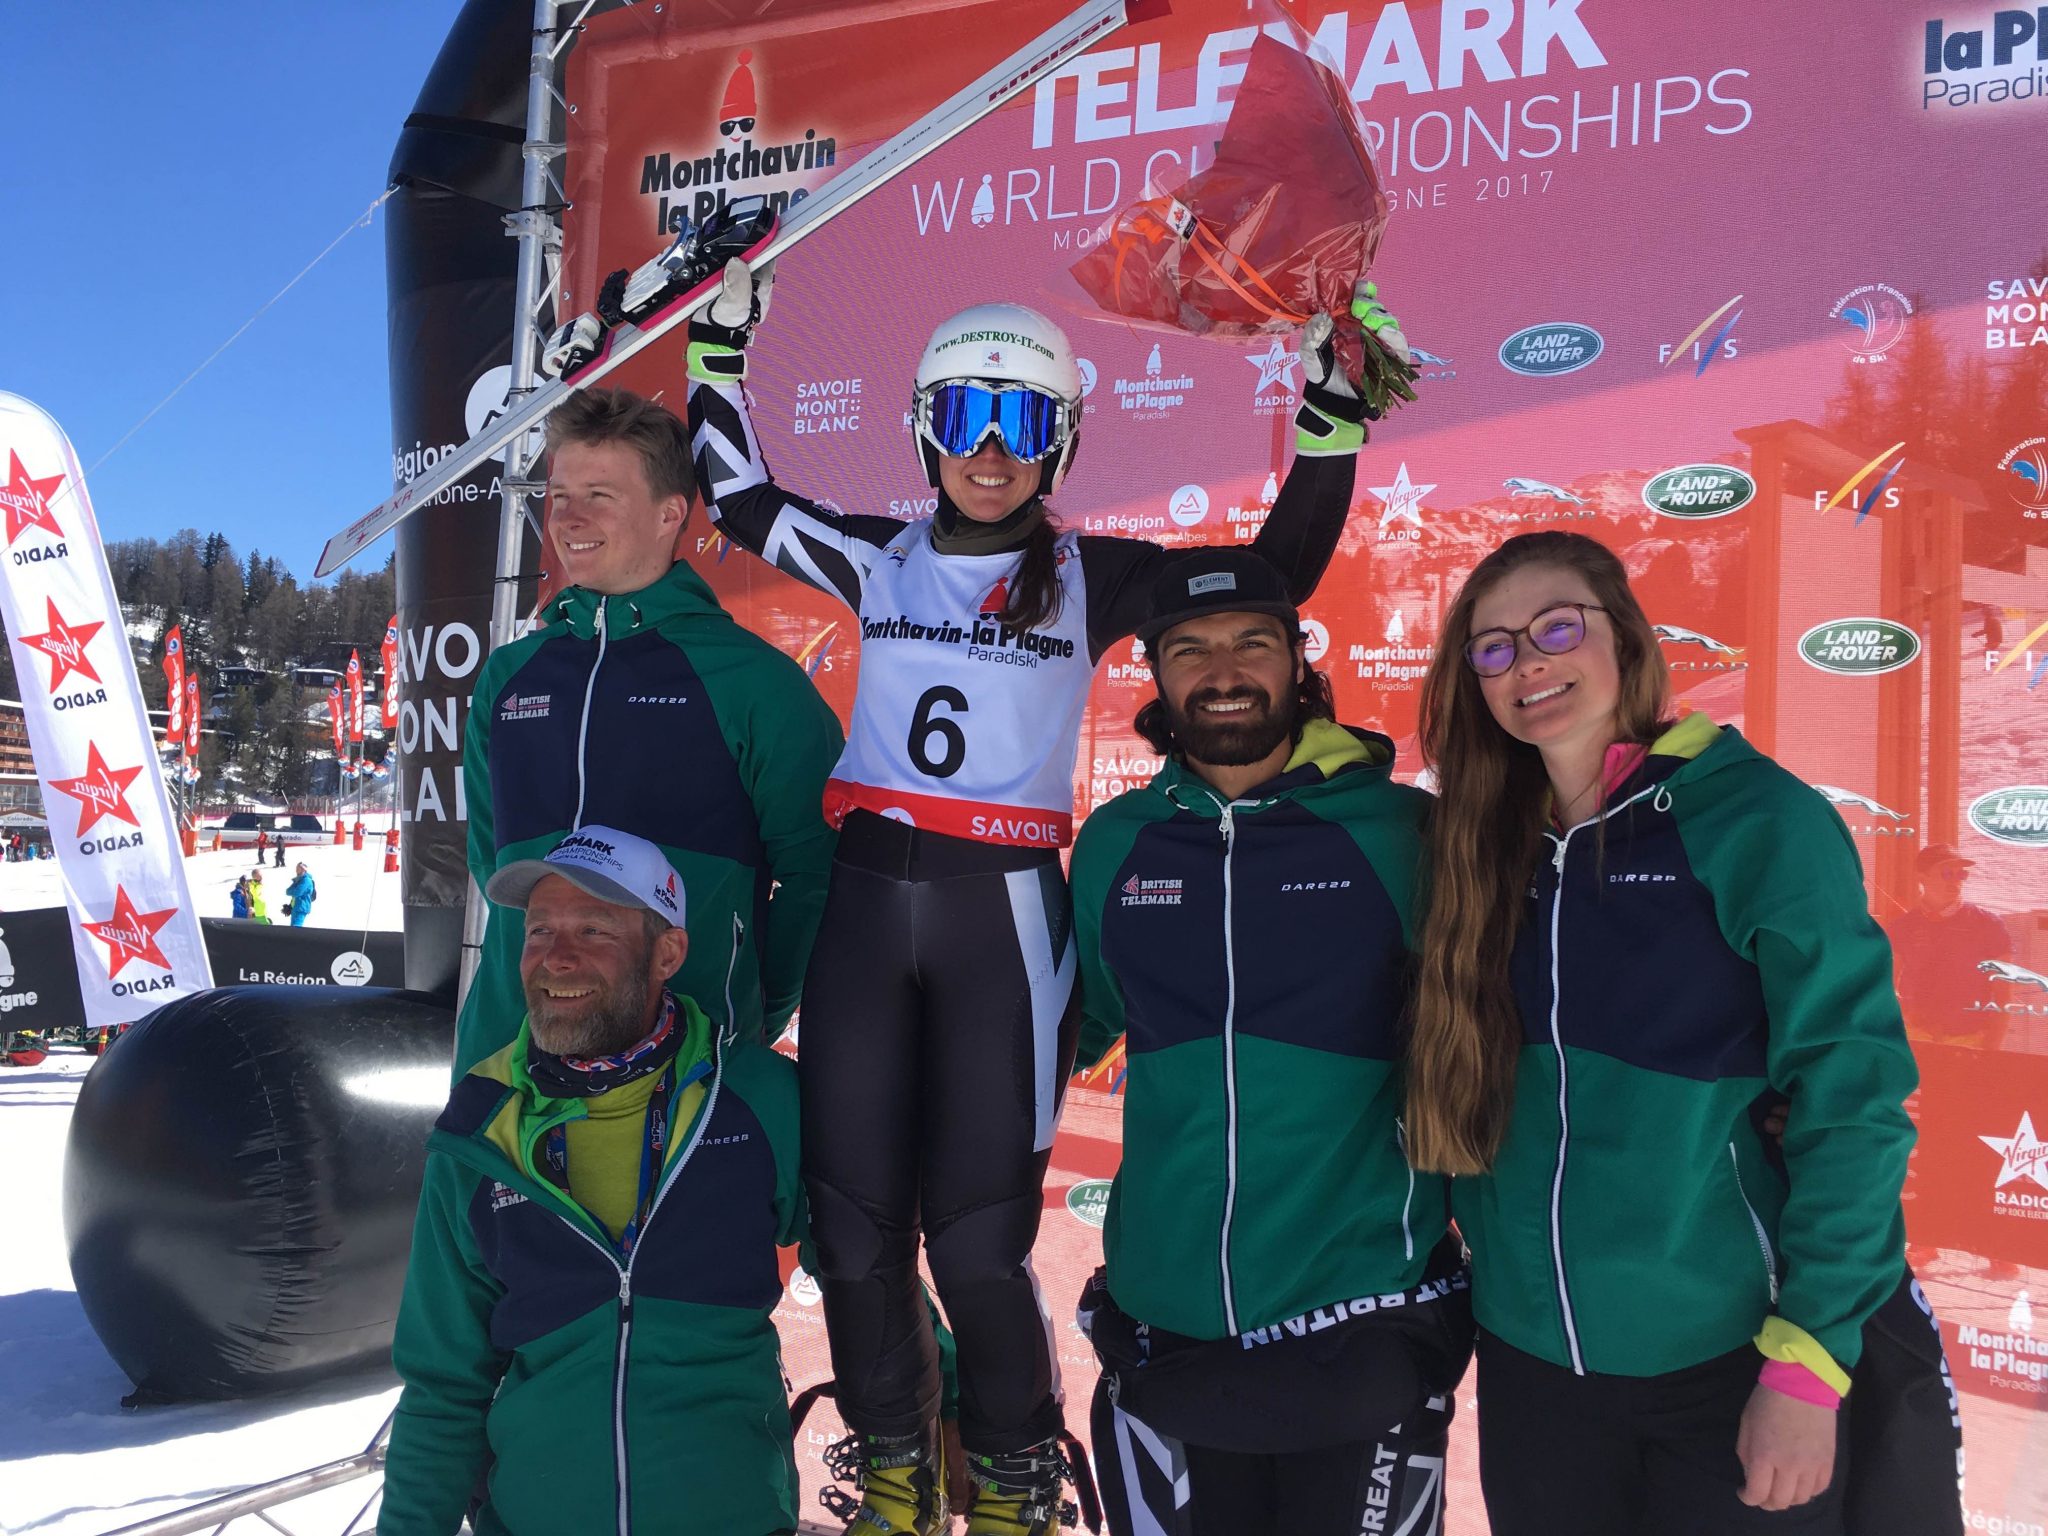 British Telemark Team announced for 2017/18 season